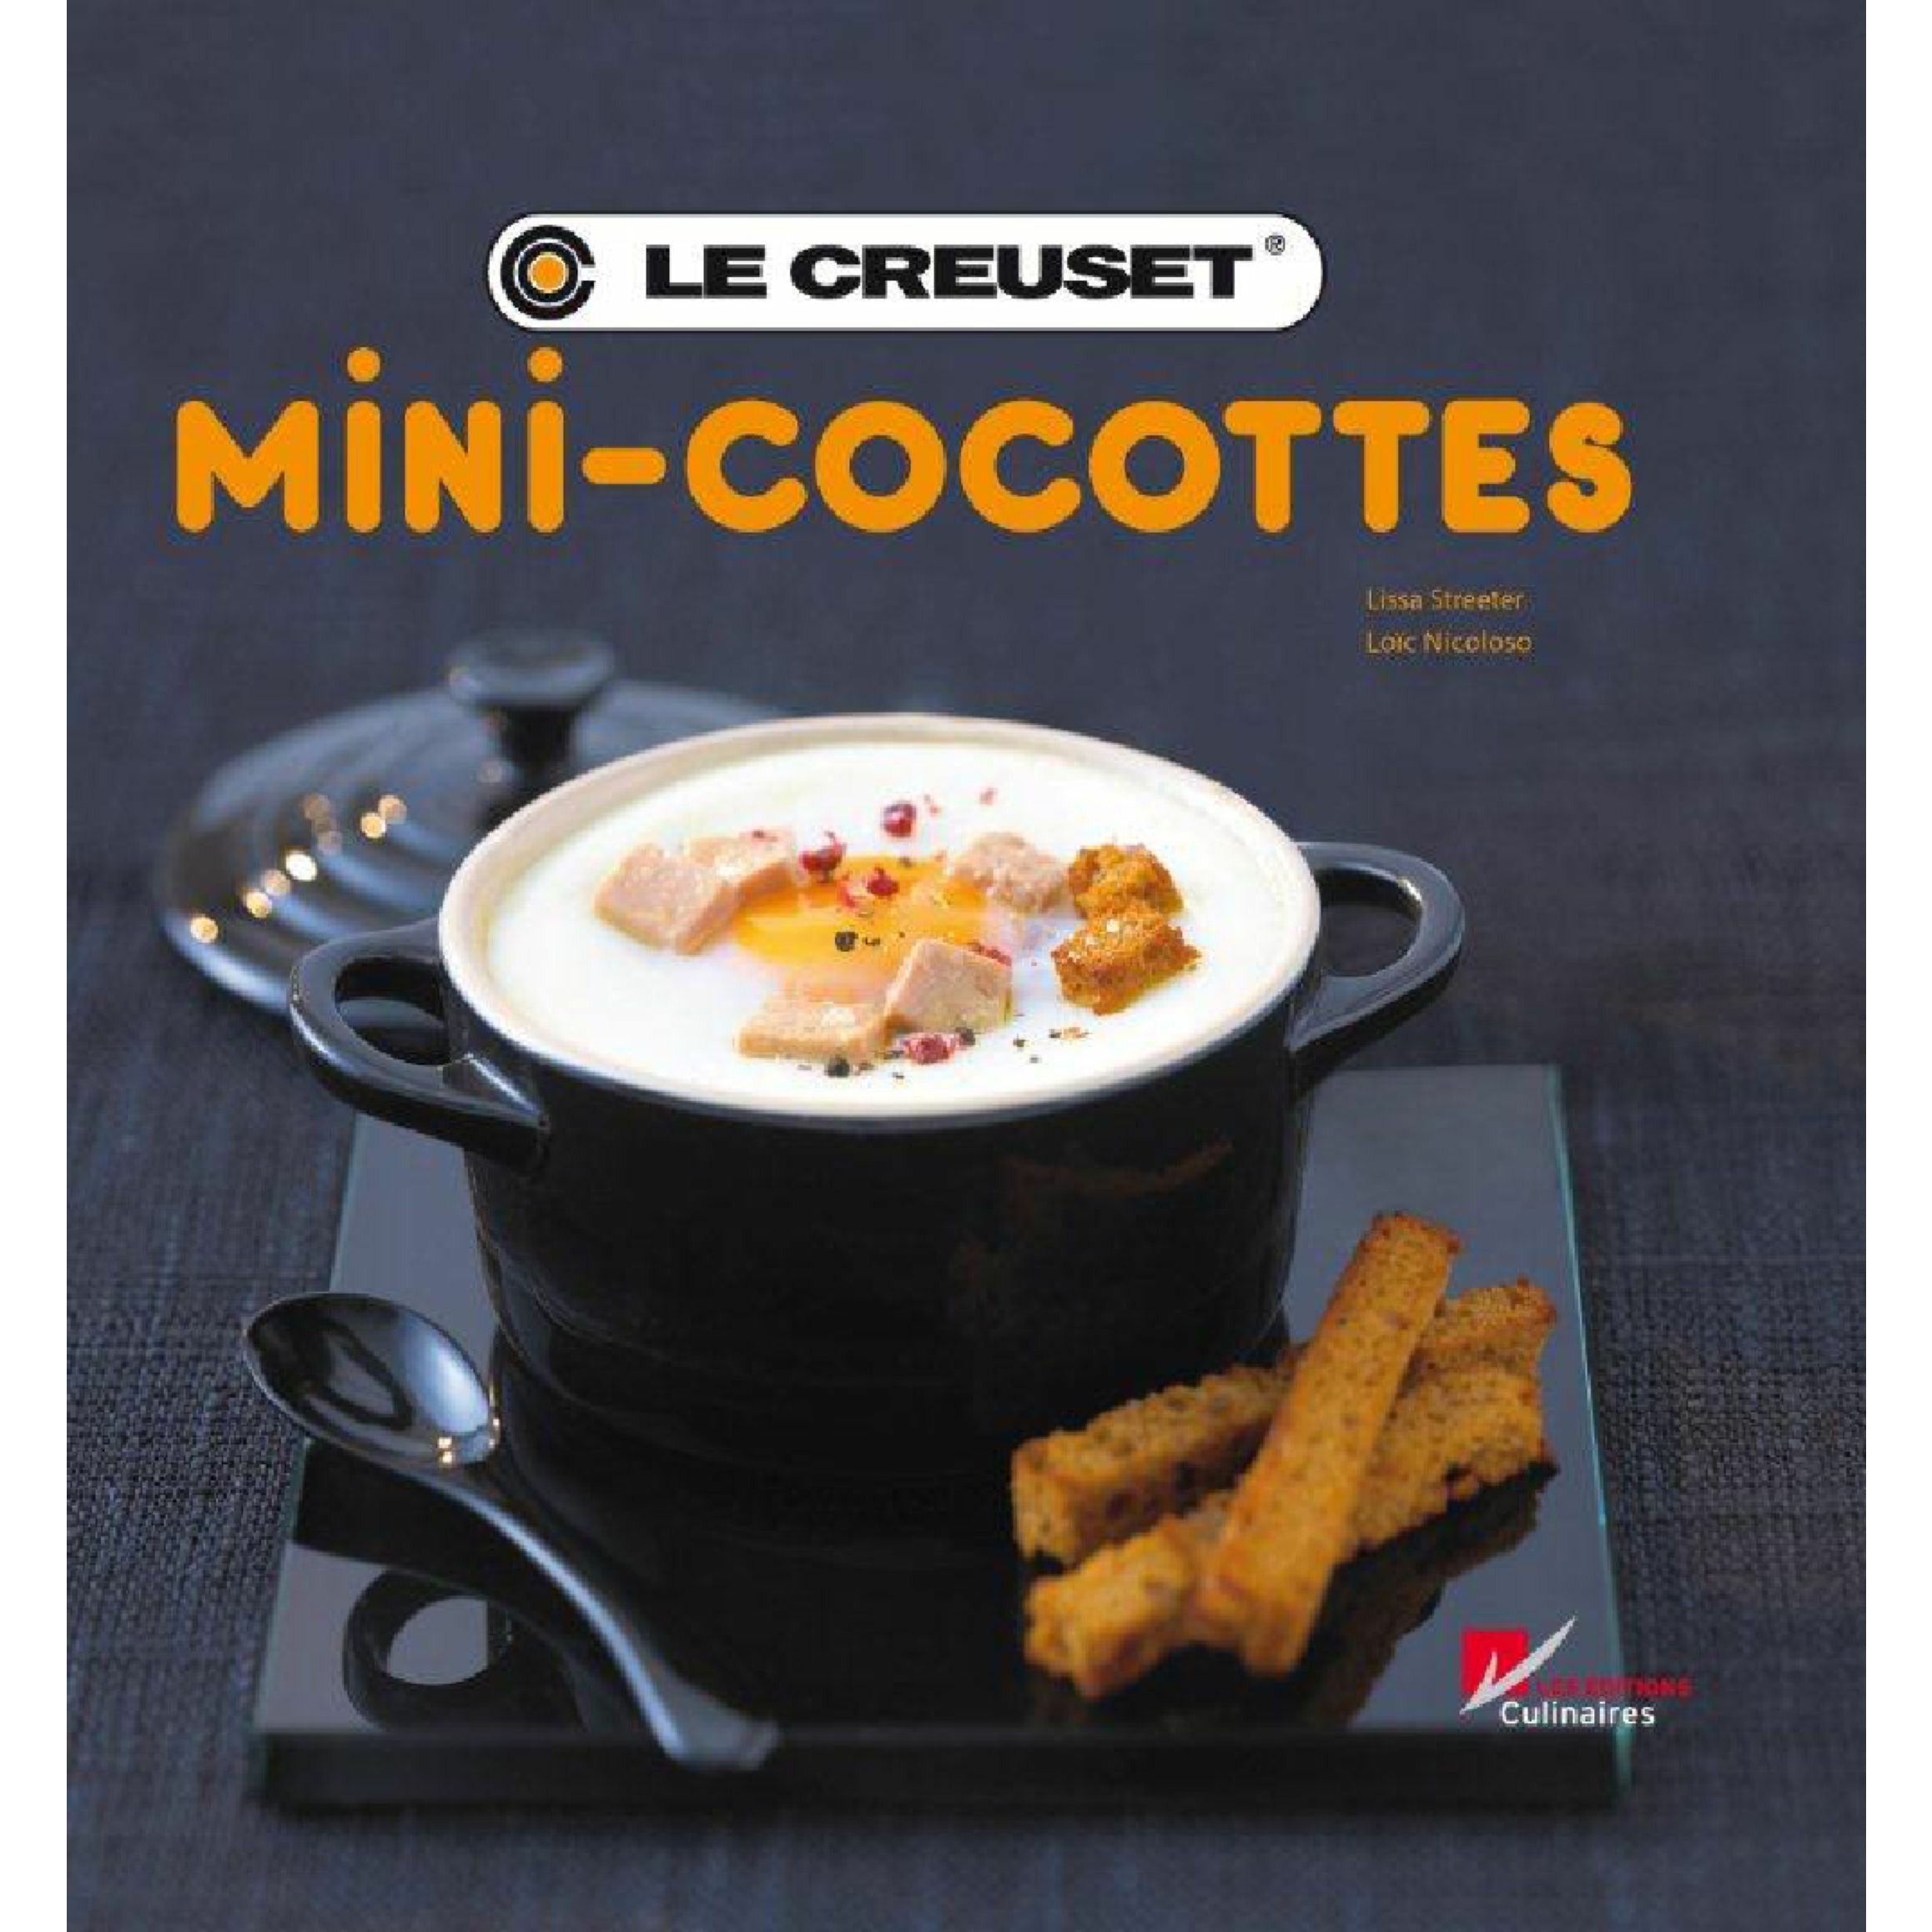 Le Creuset食谱迷你Cocotte德语